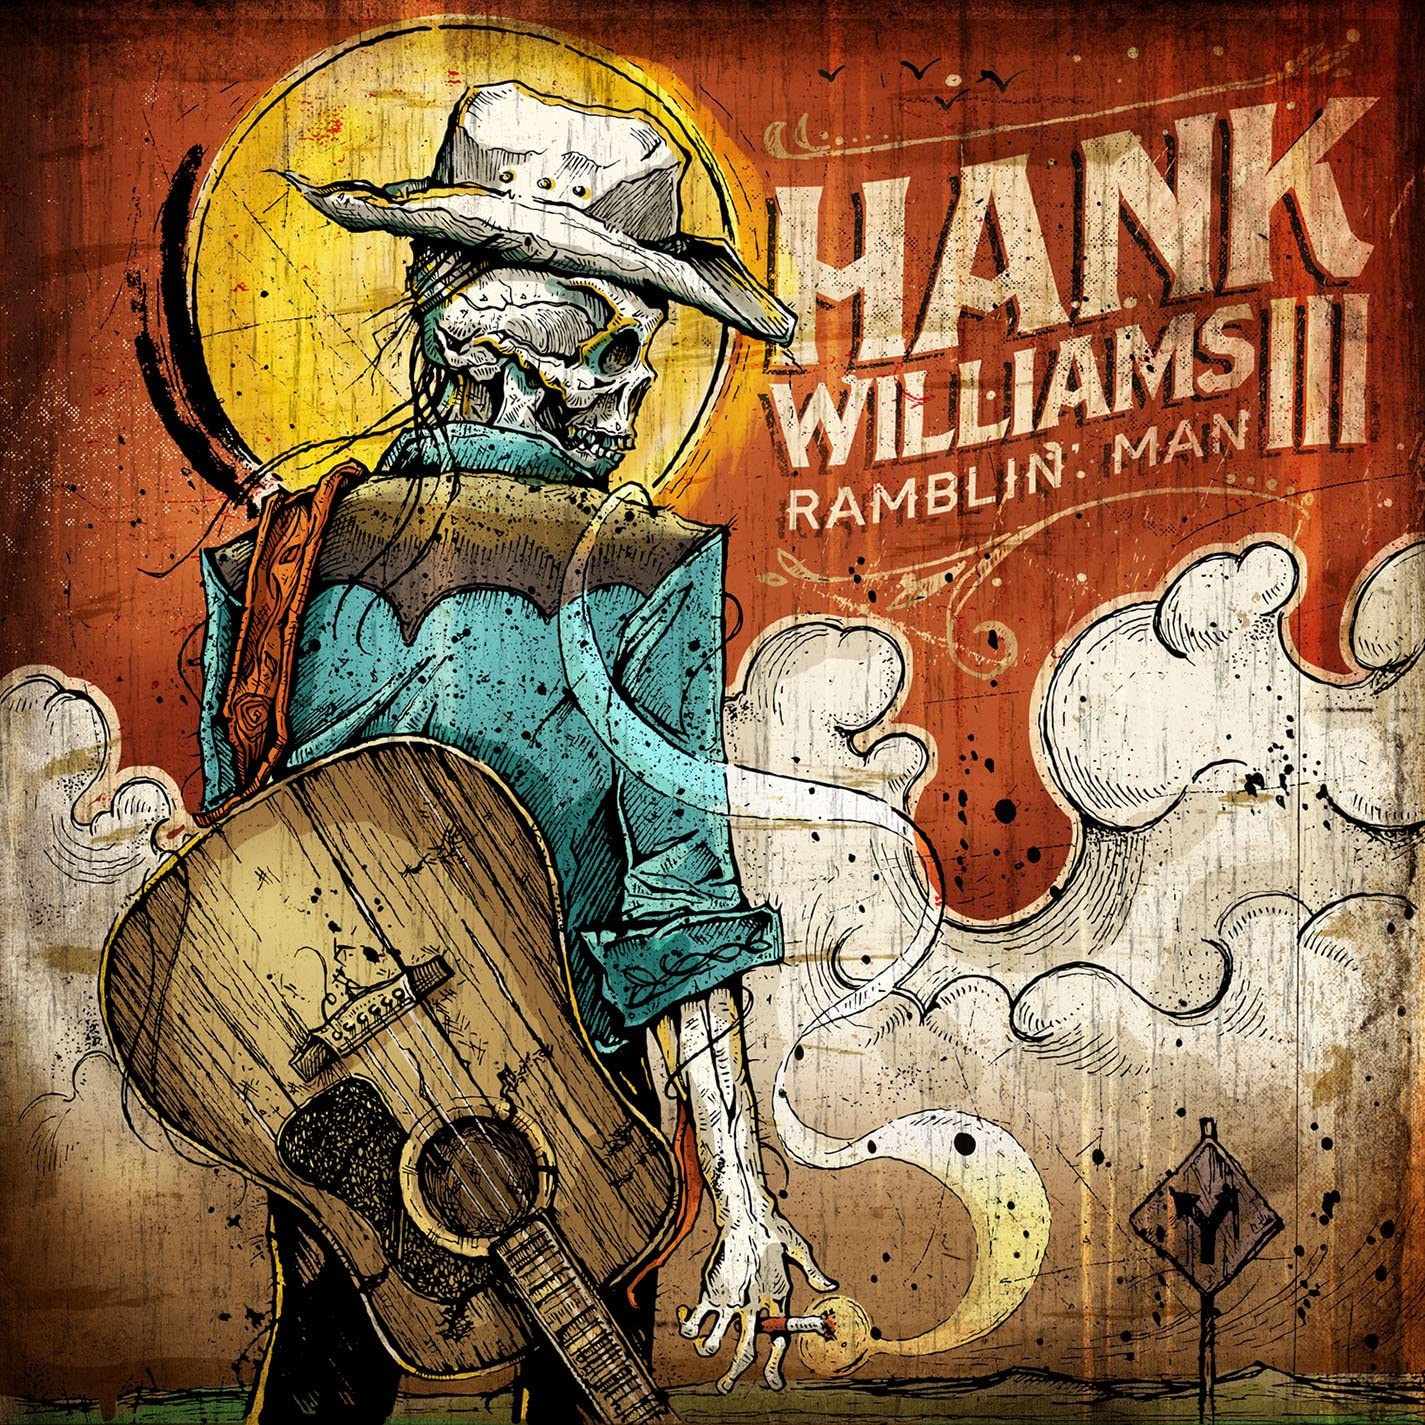 Williams, Hank III/Ramblin' Man [LP]